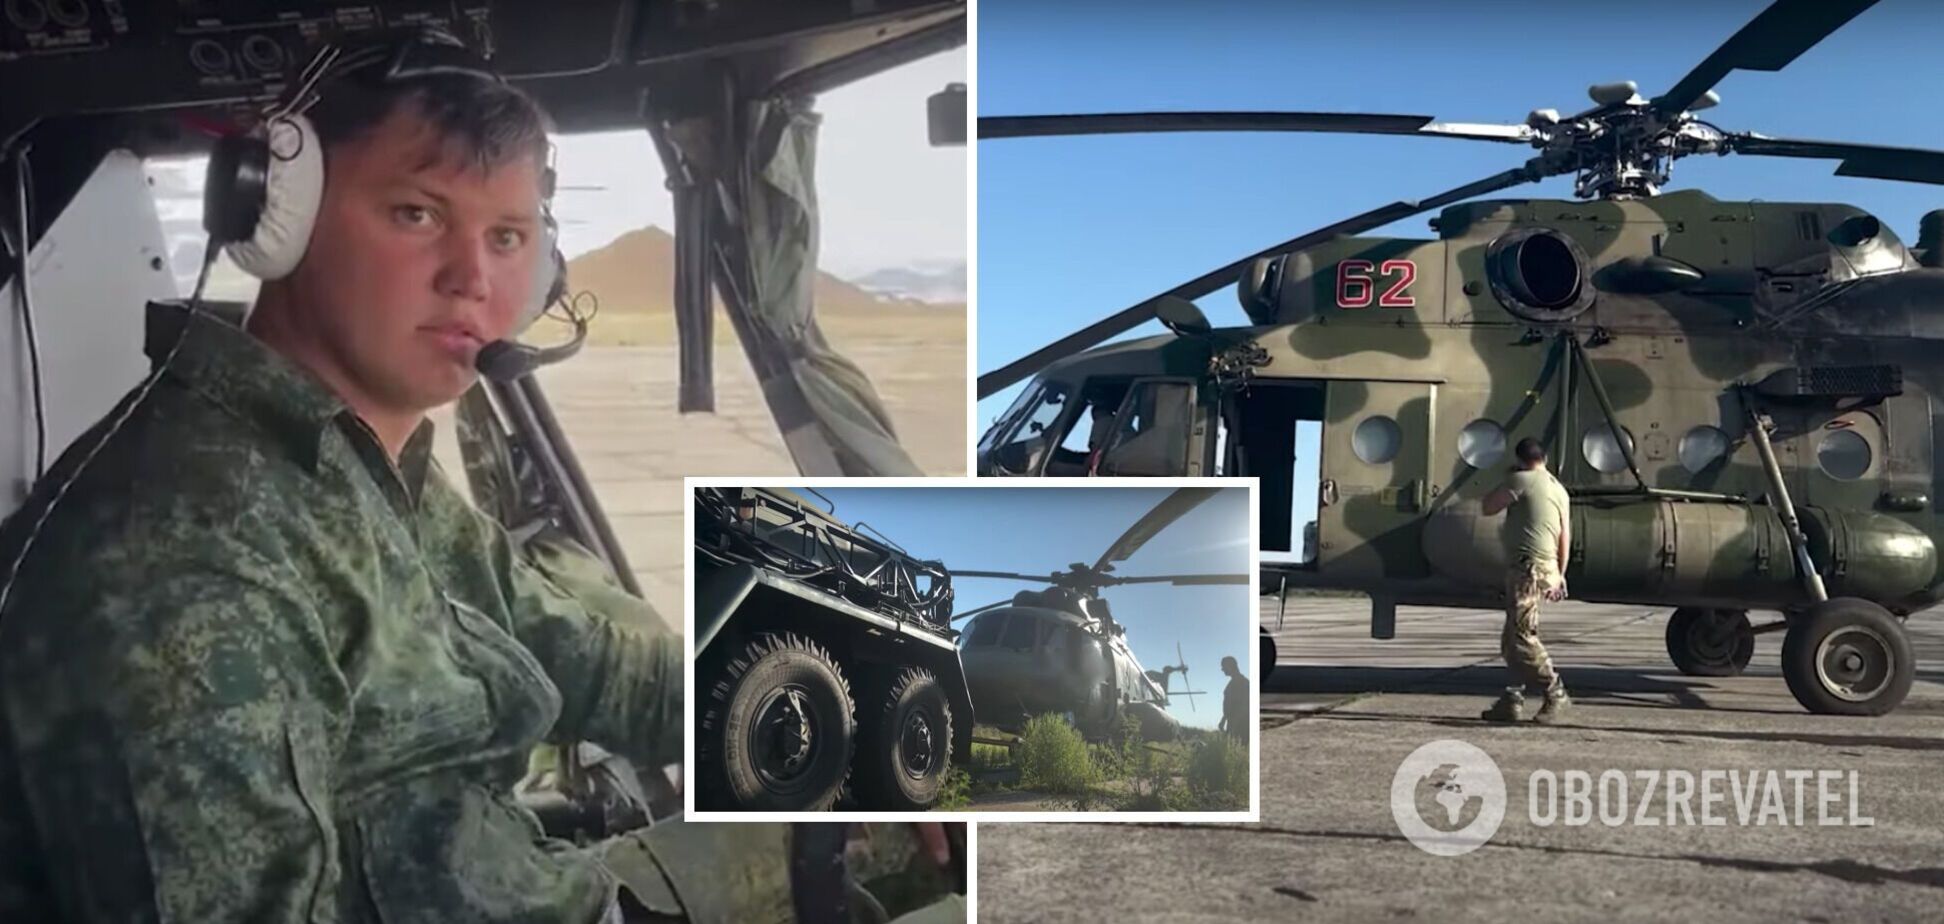 'Ви багато чого не знаєте': російський пілот, який перегнав в Україну Мі-8, закликав інших окупантів зробити так само